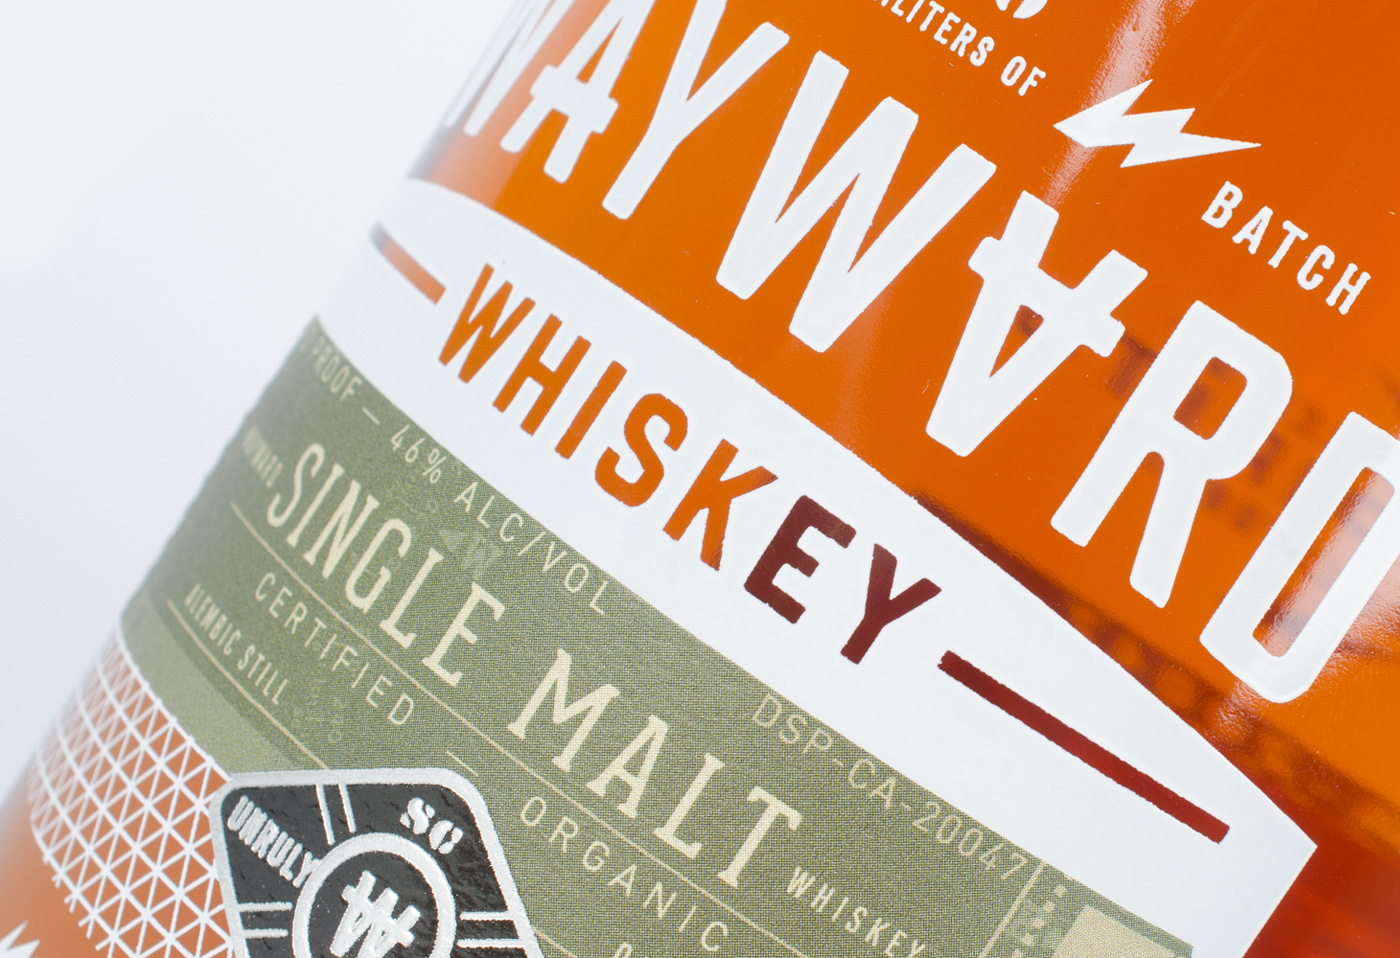 Wayward Whiskey packaging detail